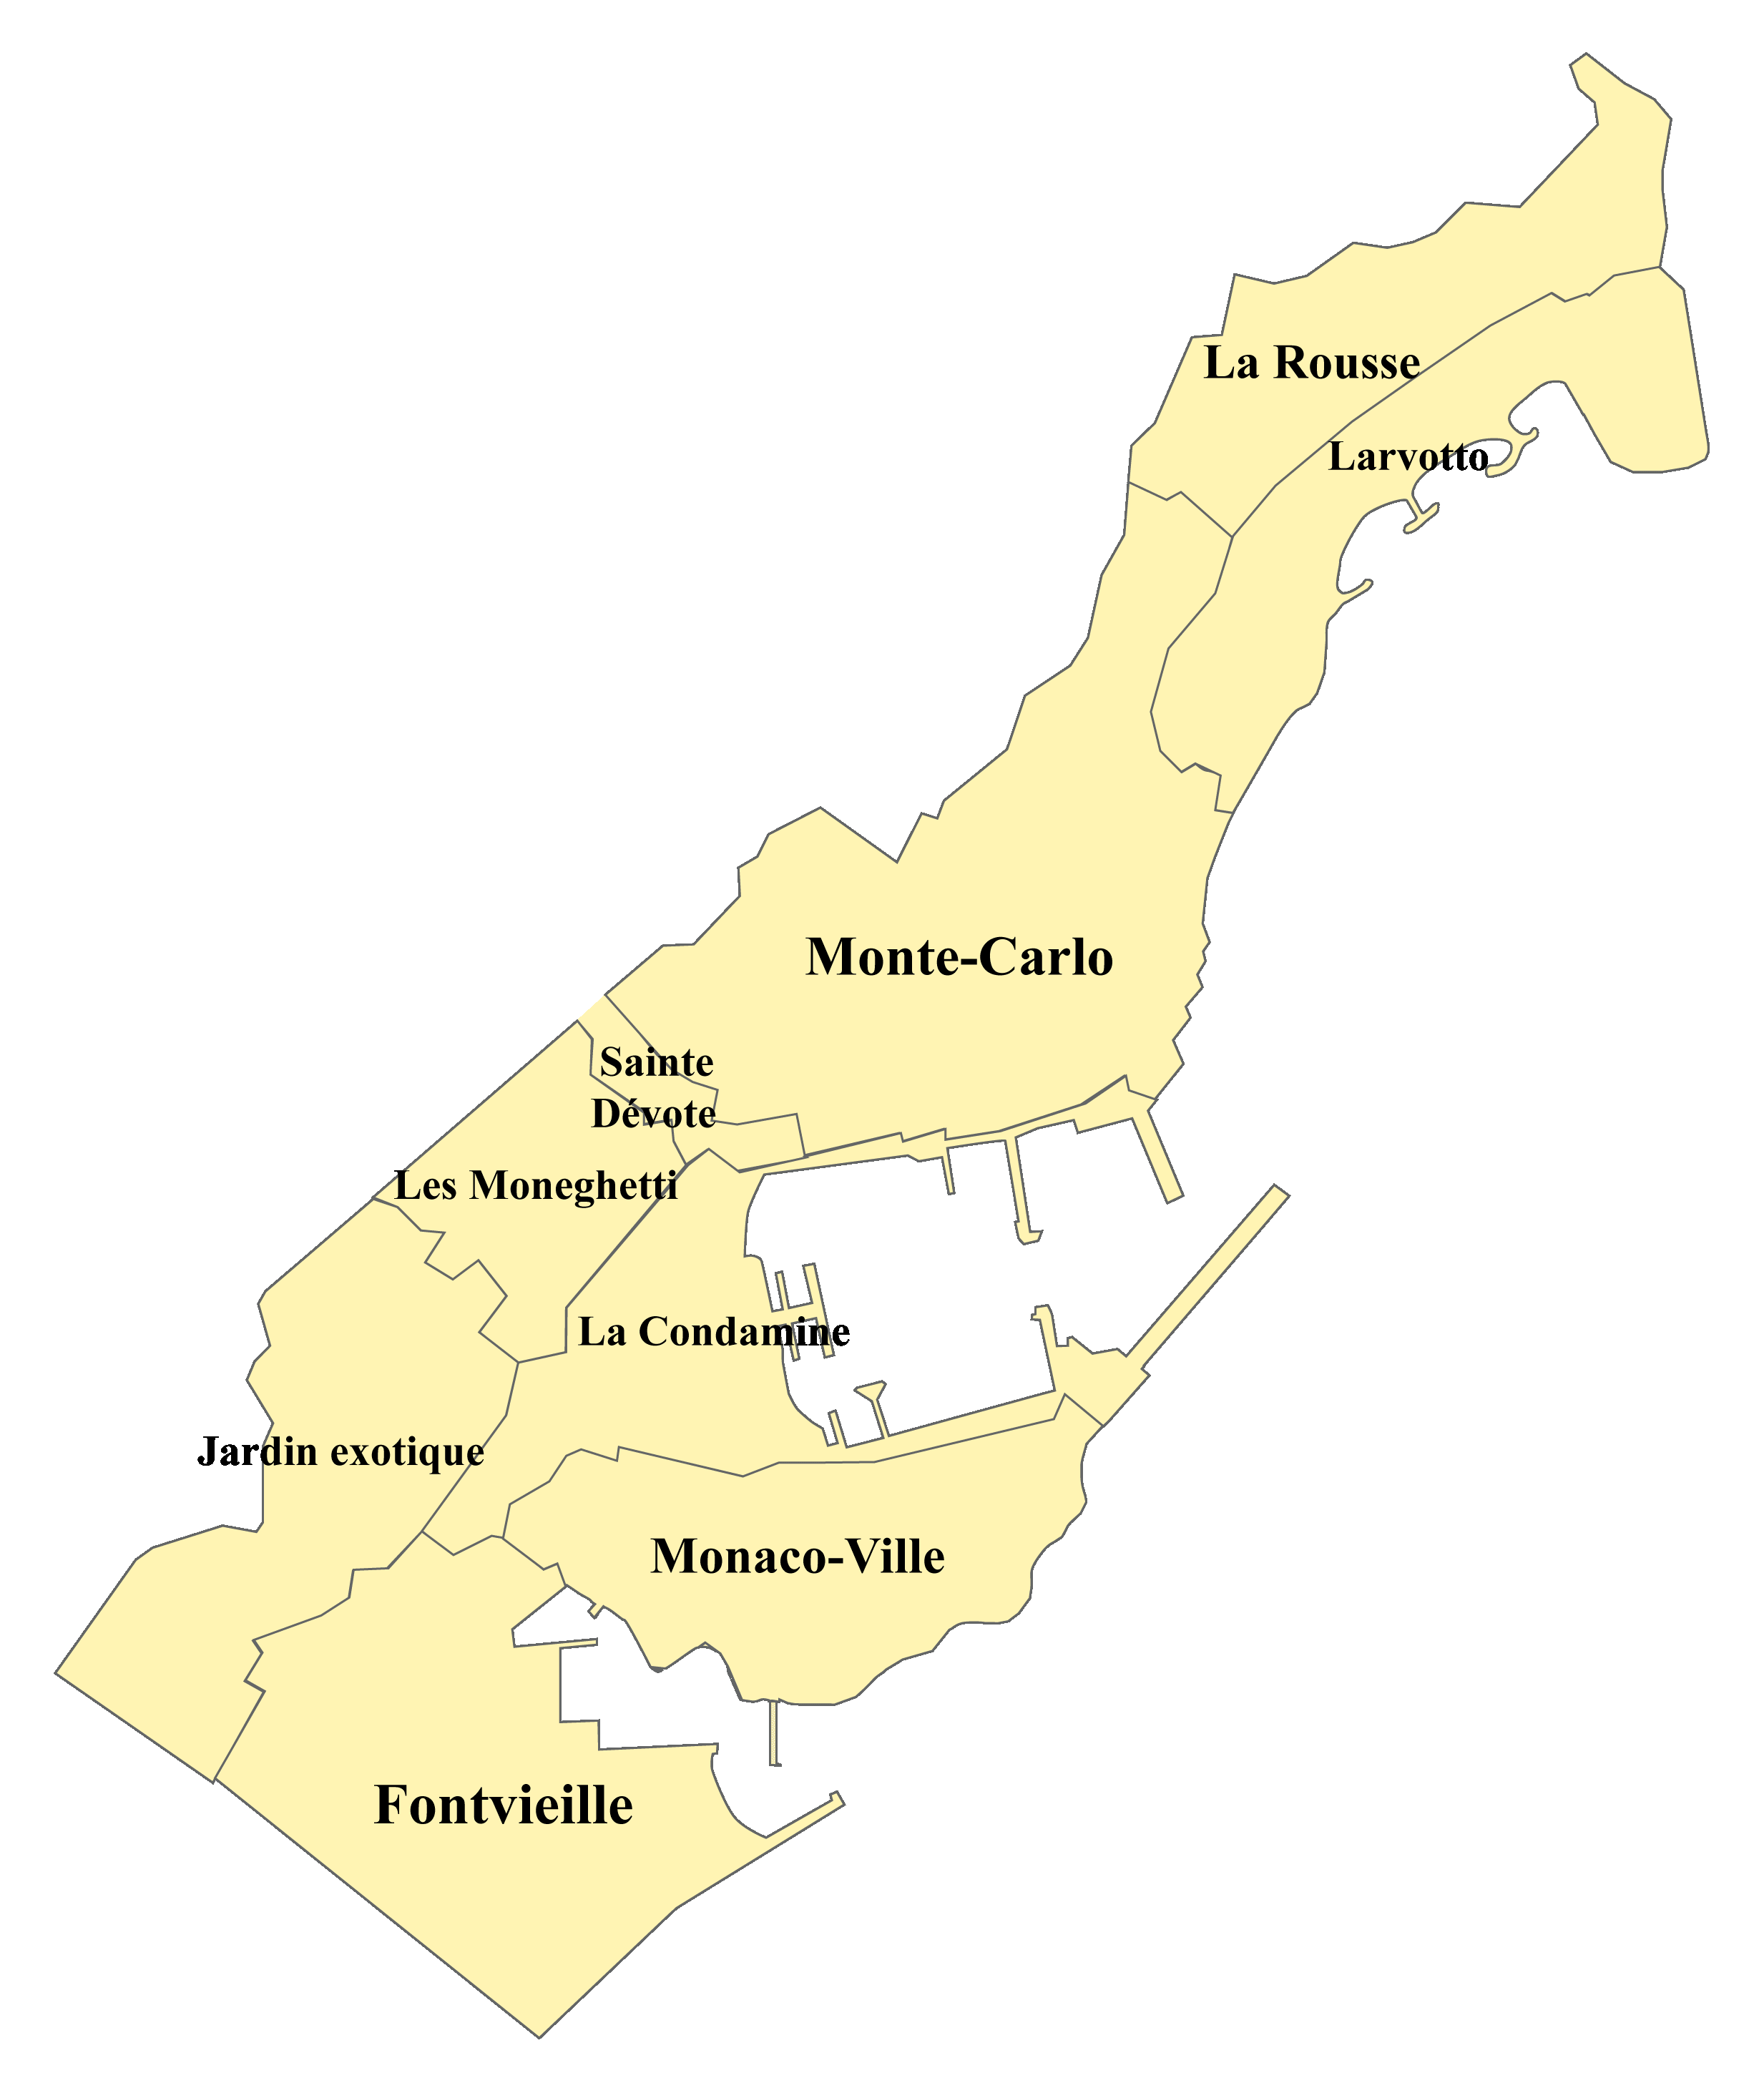 Monaco Karte nach Regionen gegliedert